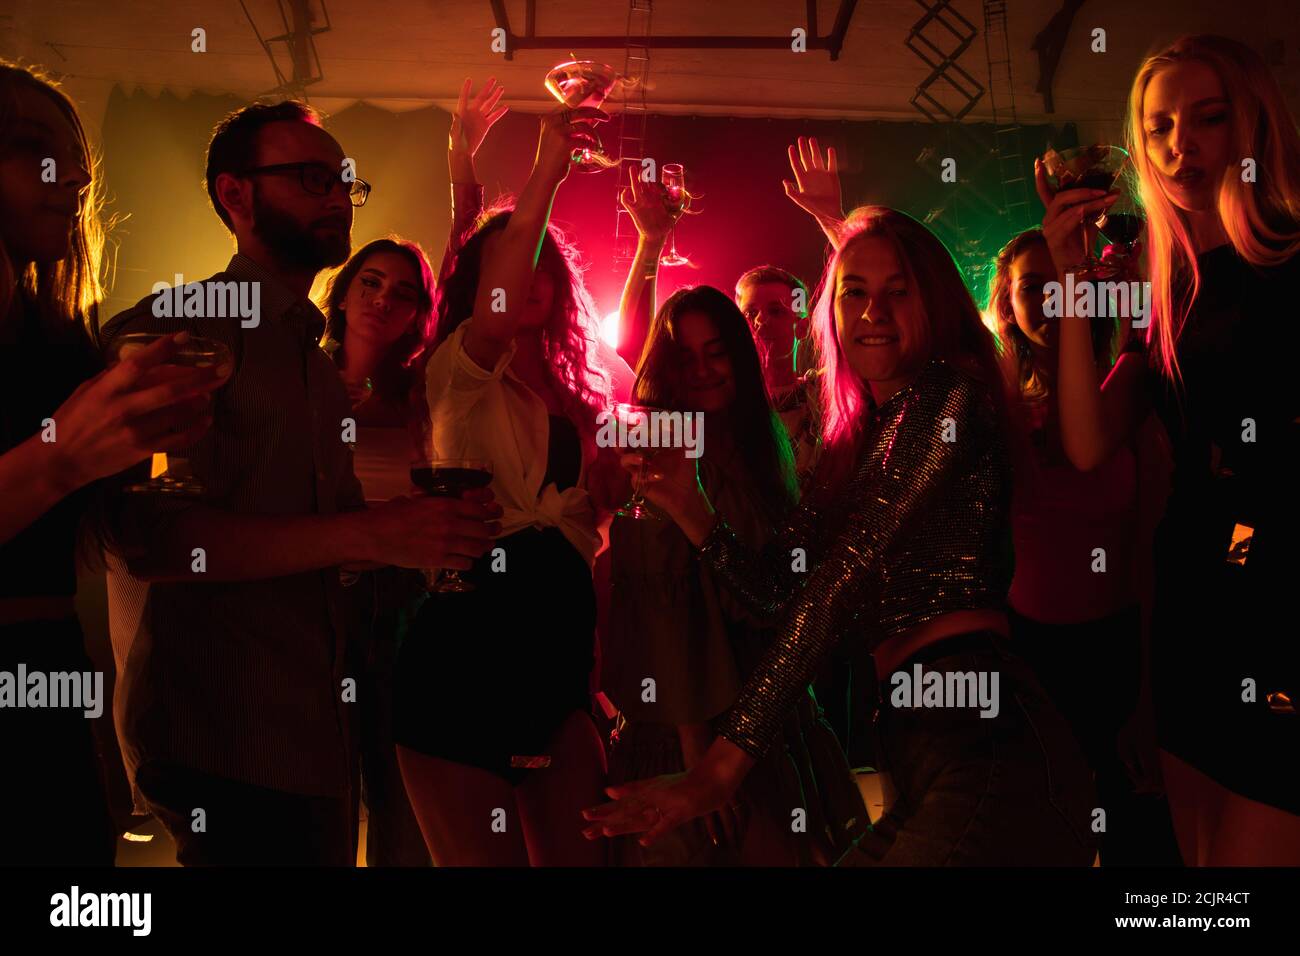 Emotionen. Eine Menge von Menschen in Silhouette hebt die Hände und tanzt auf Tanzfläche auf neonhellem Hintergrund. Nachtleben, Club, Musik, Tanz, Bewegung, Jugend. Helle Farben und bewegende Mädchen und Jungen. Stockfoto